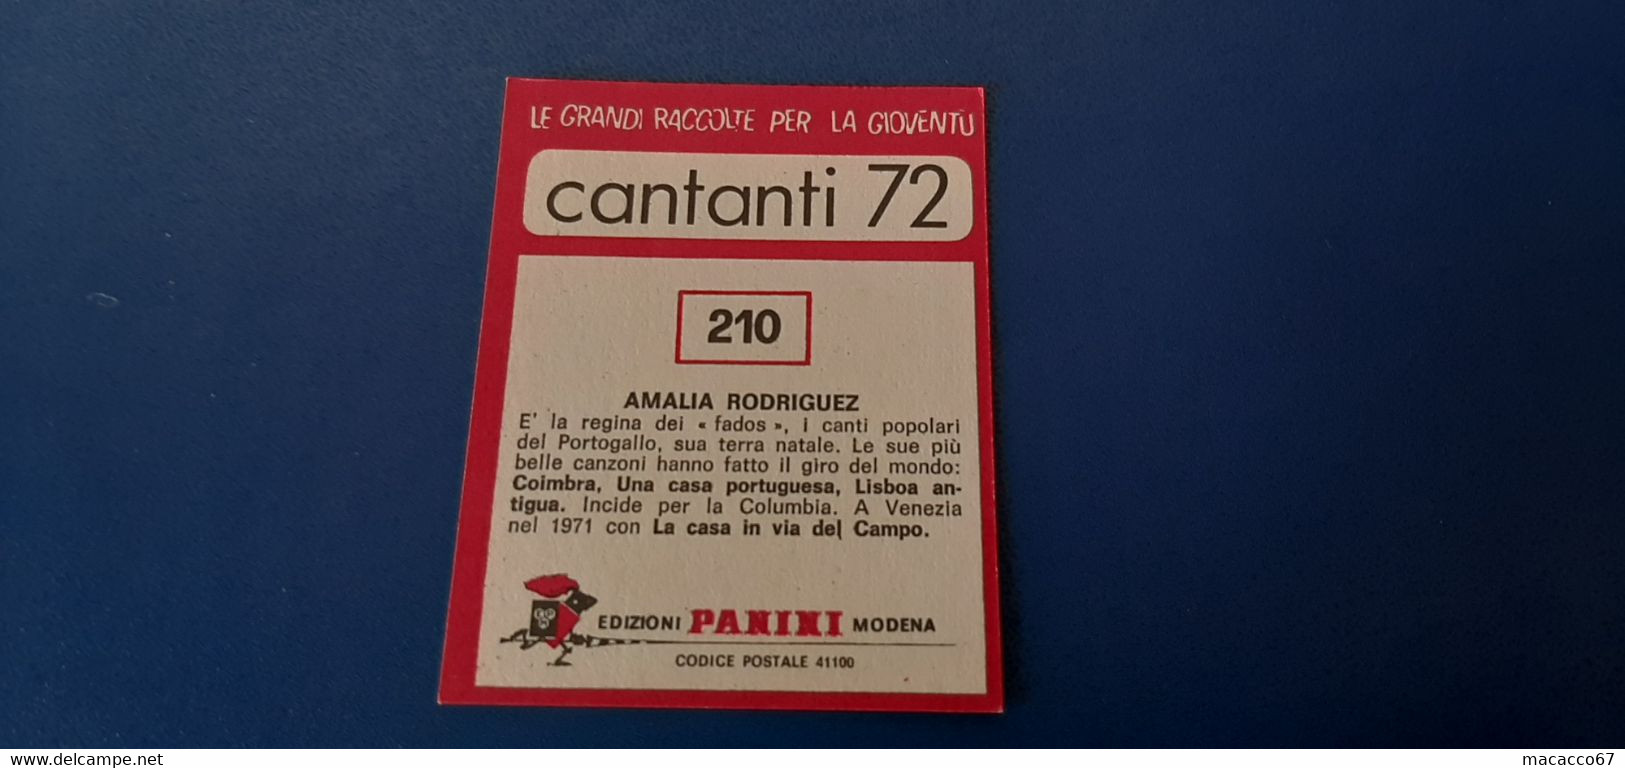 Figurina Panini Cantanti 1972 - 210 Amalia Rodriguez - Edizione Italiana